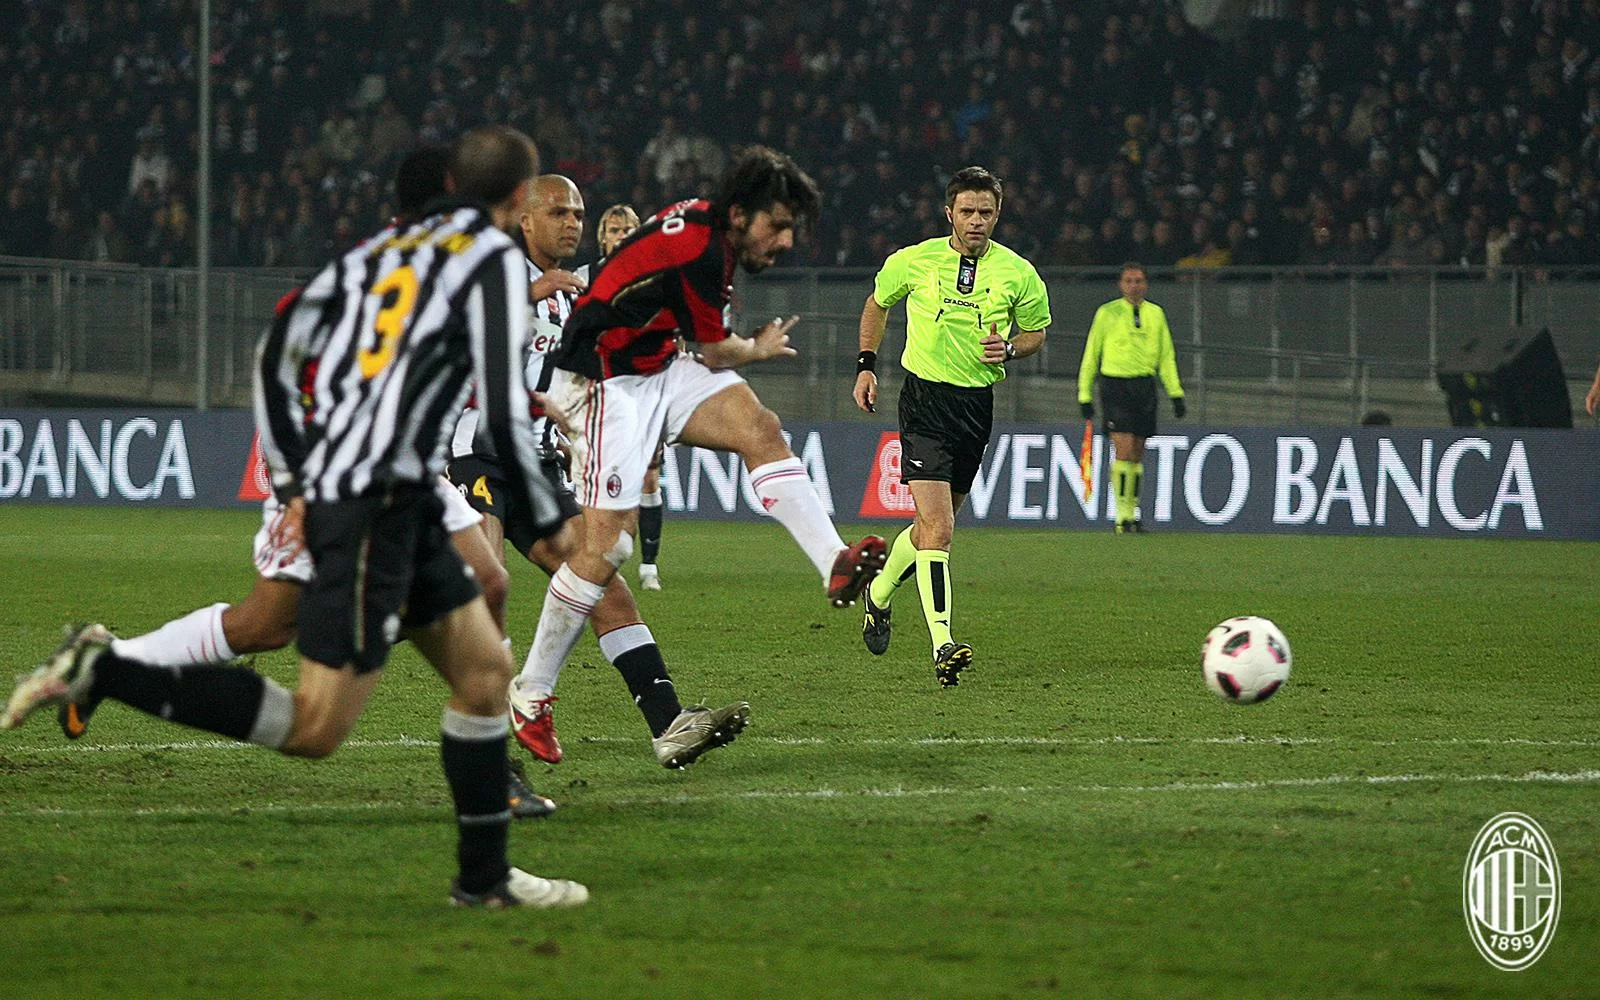 Da Sabadini a Gattuso: cinque Juve-Milan di marzo da ricordare